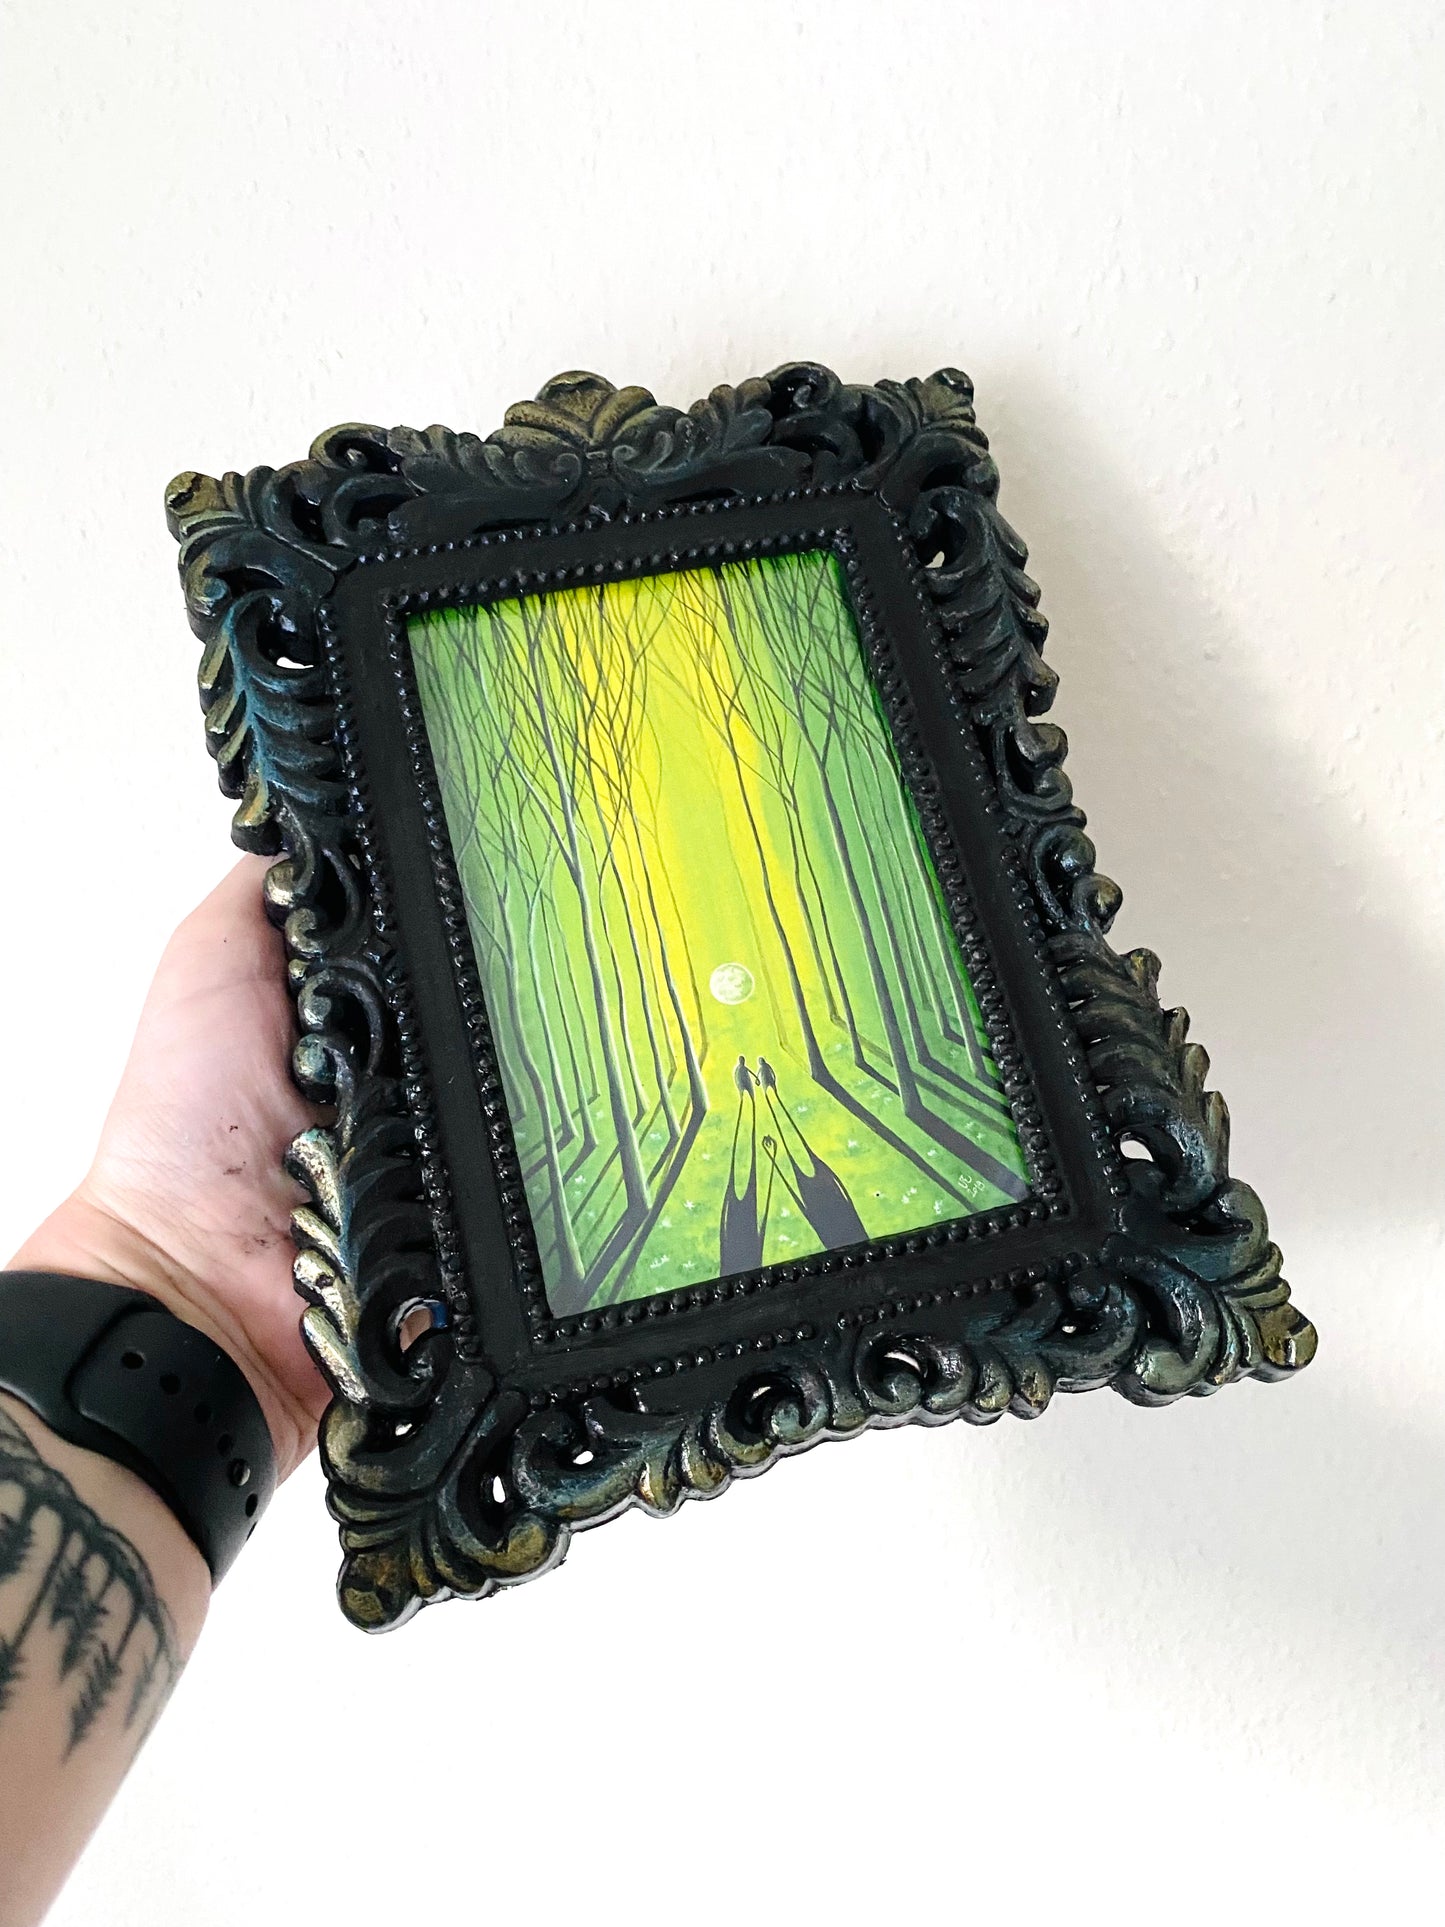 Mini framed art print in an ornate frame / Mini művészi nyomat díszes keretben